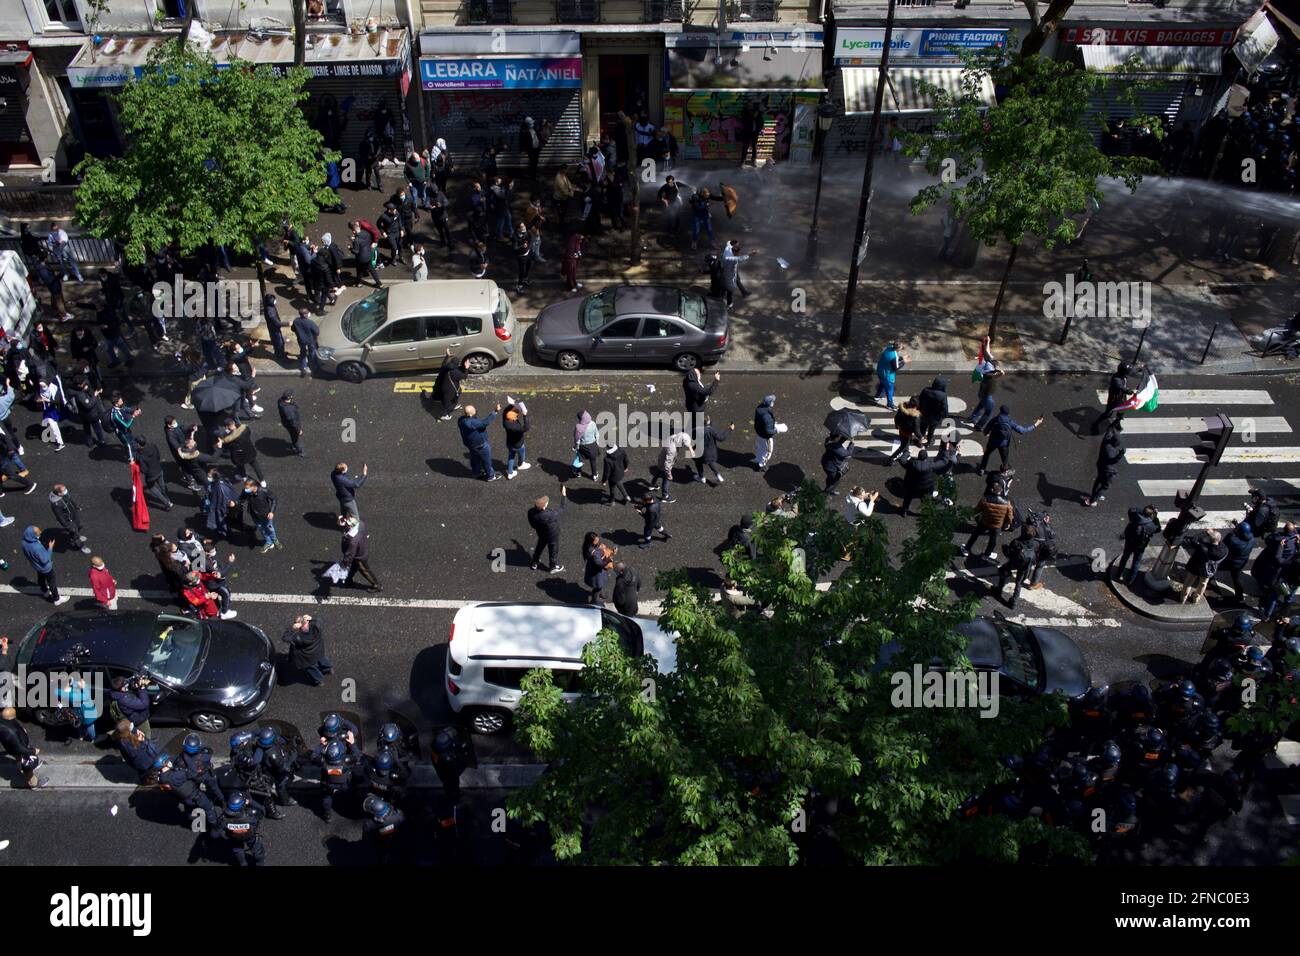 La police a pompier du canon à eau sur des supporters pro-palestiniens manifestant à Paris. Boulevard Barbès, Paris, France, 15 mai 2021 Banque D'Images